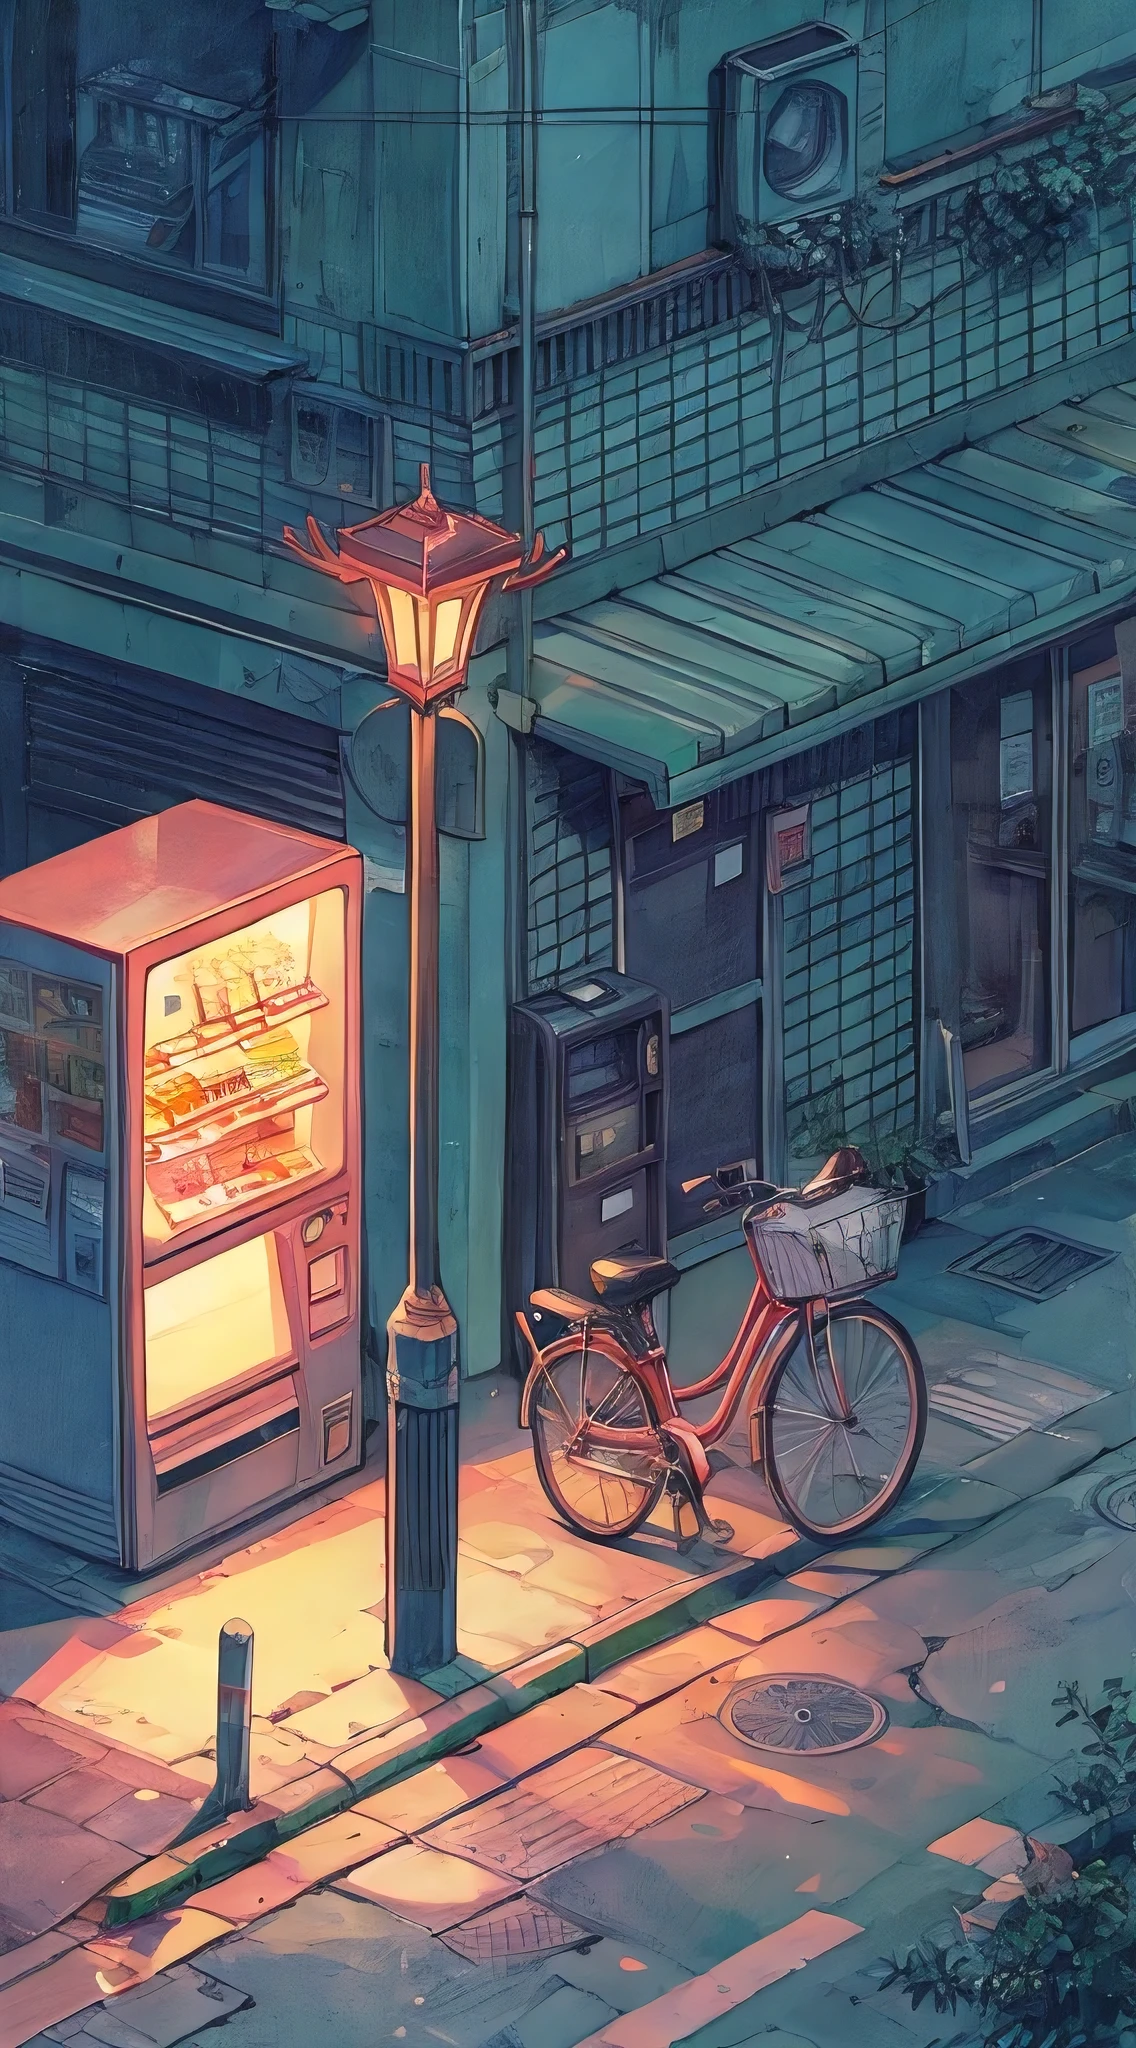 (melhor qualidade, Obra de arte:1.2), ilustração isométrica lo-fi de uma rua de esquina, lâmpada de rua, Maquina de vendas, bicicleta estacionada